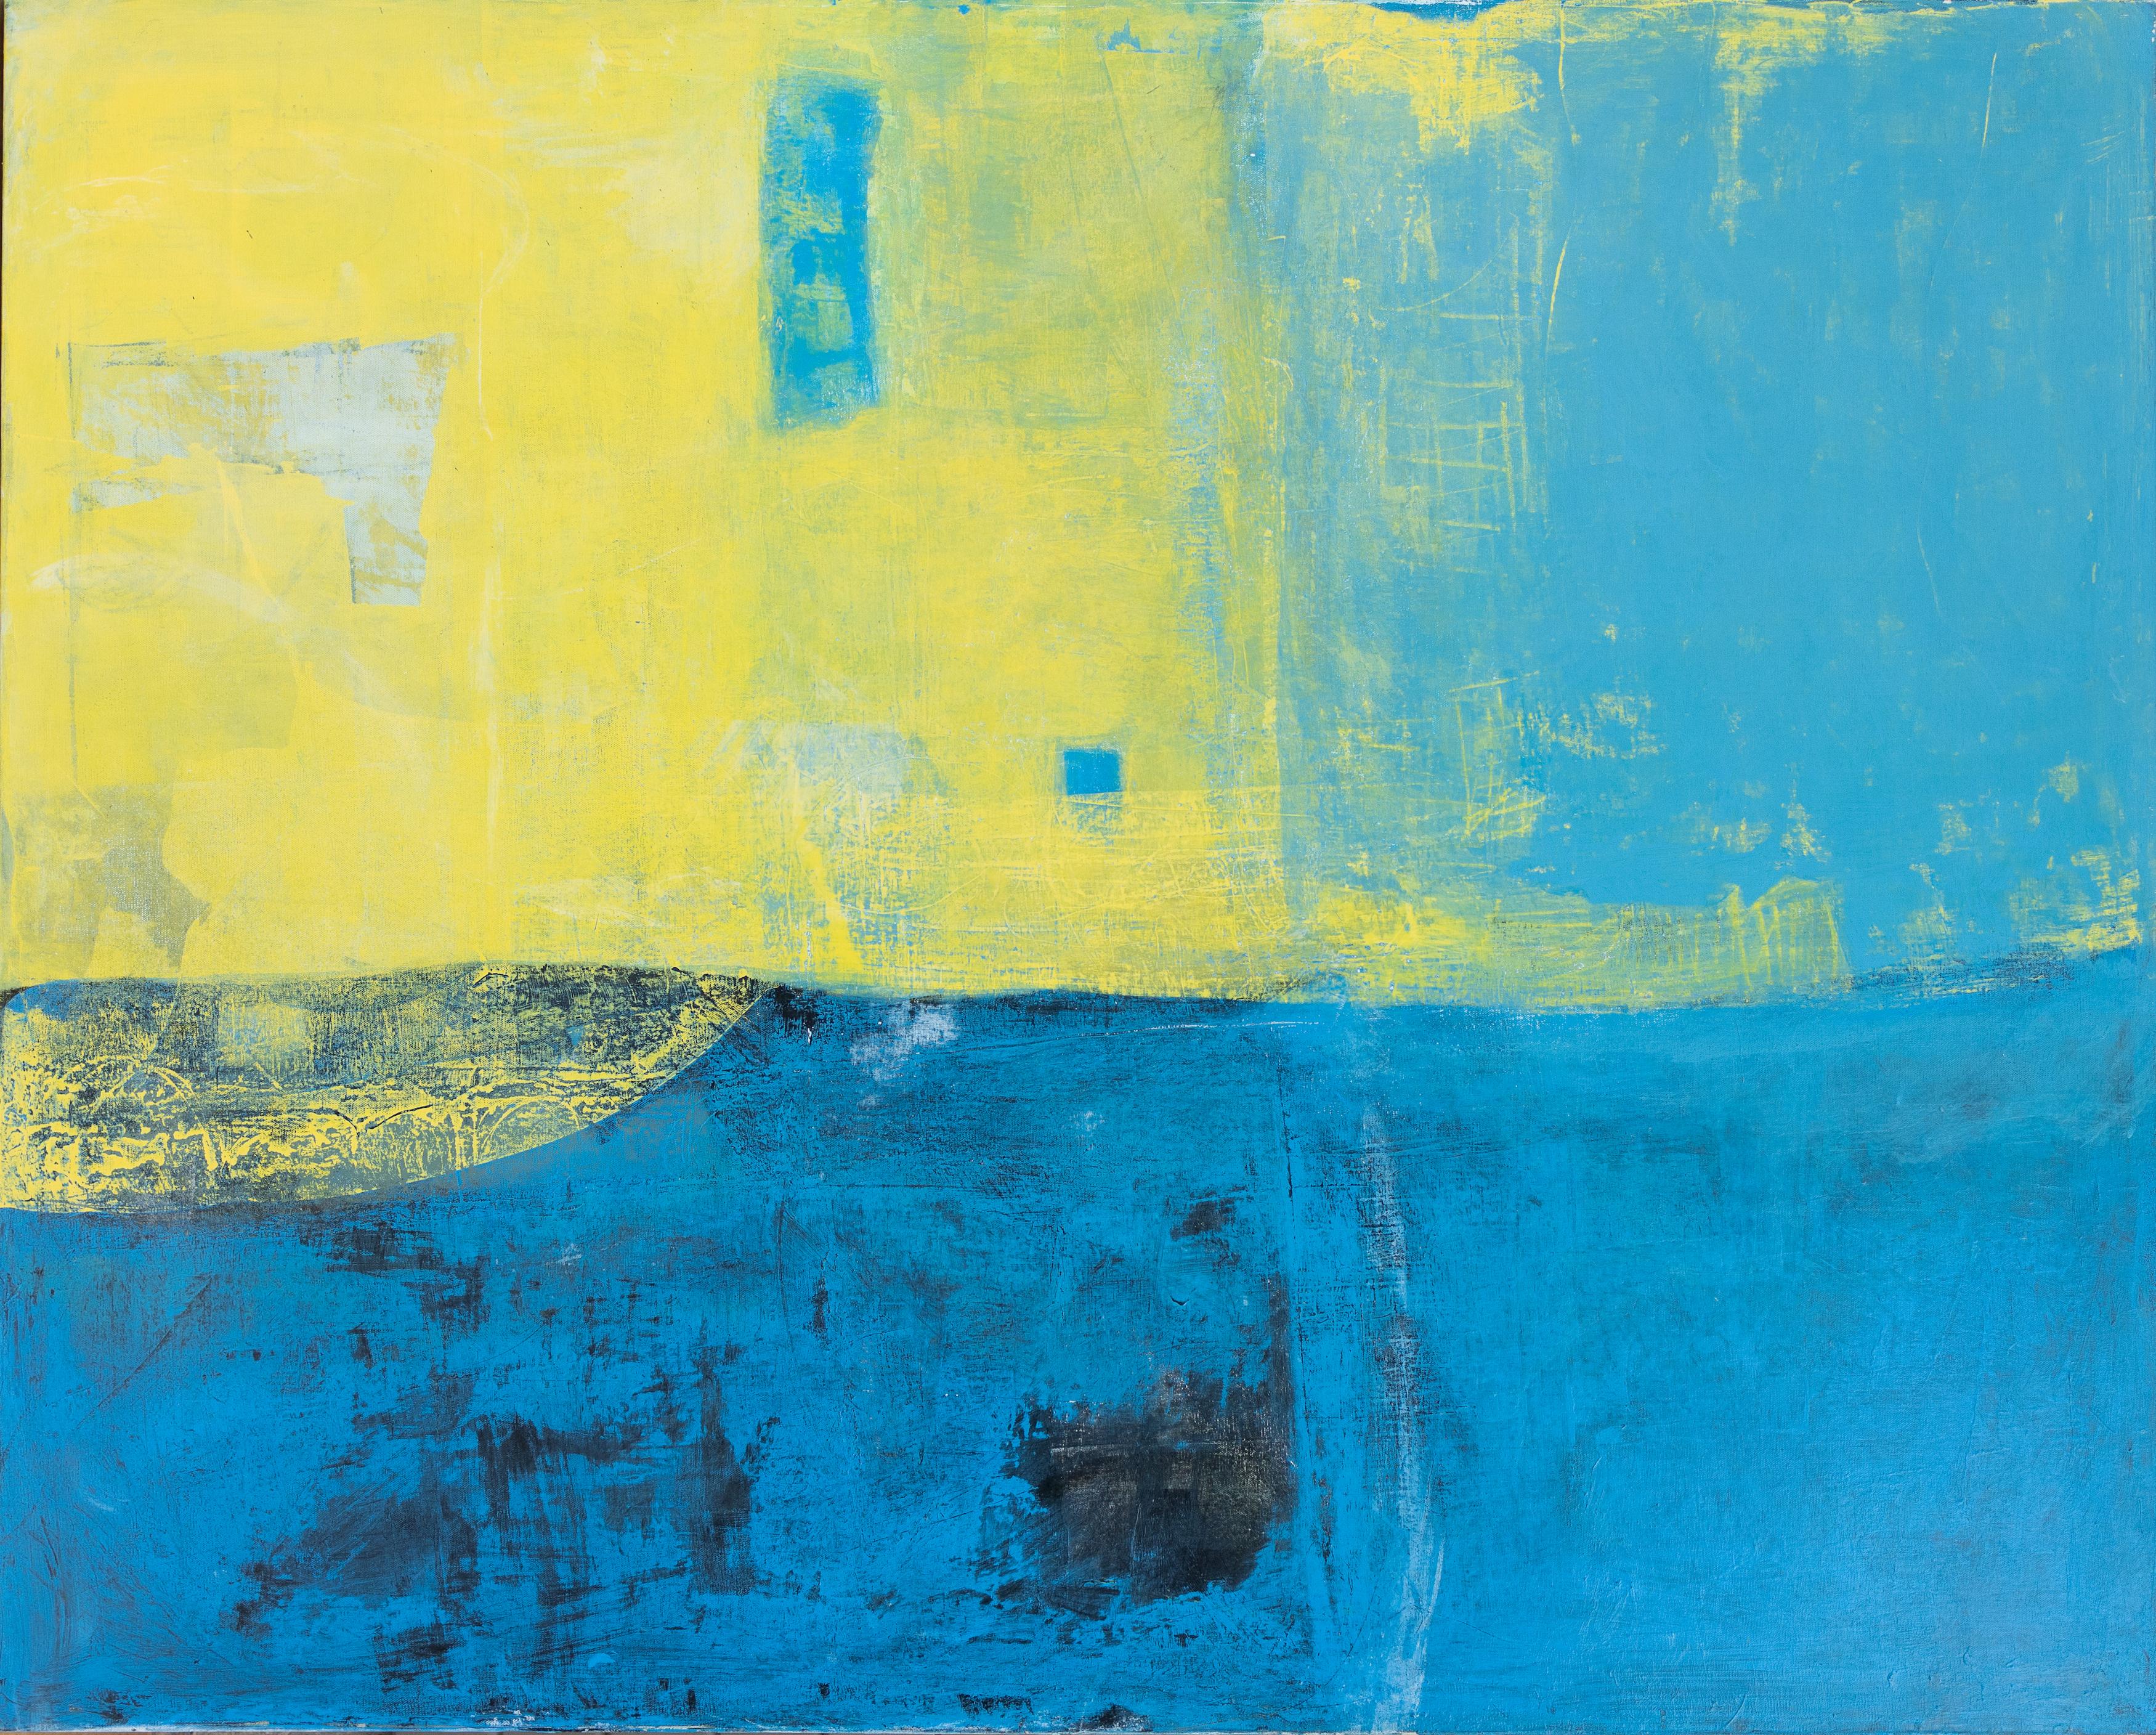 Abstrait bleu et jaune par Tom Reno
60